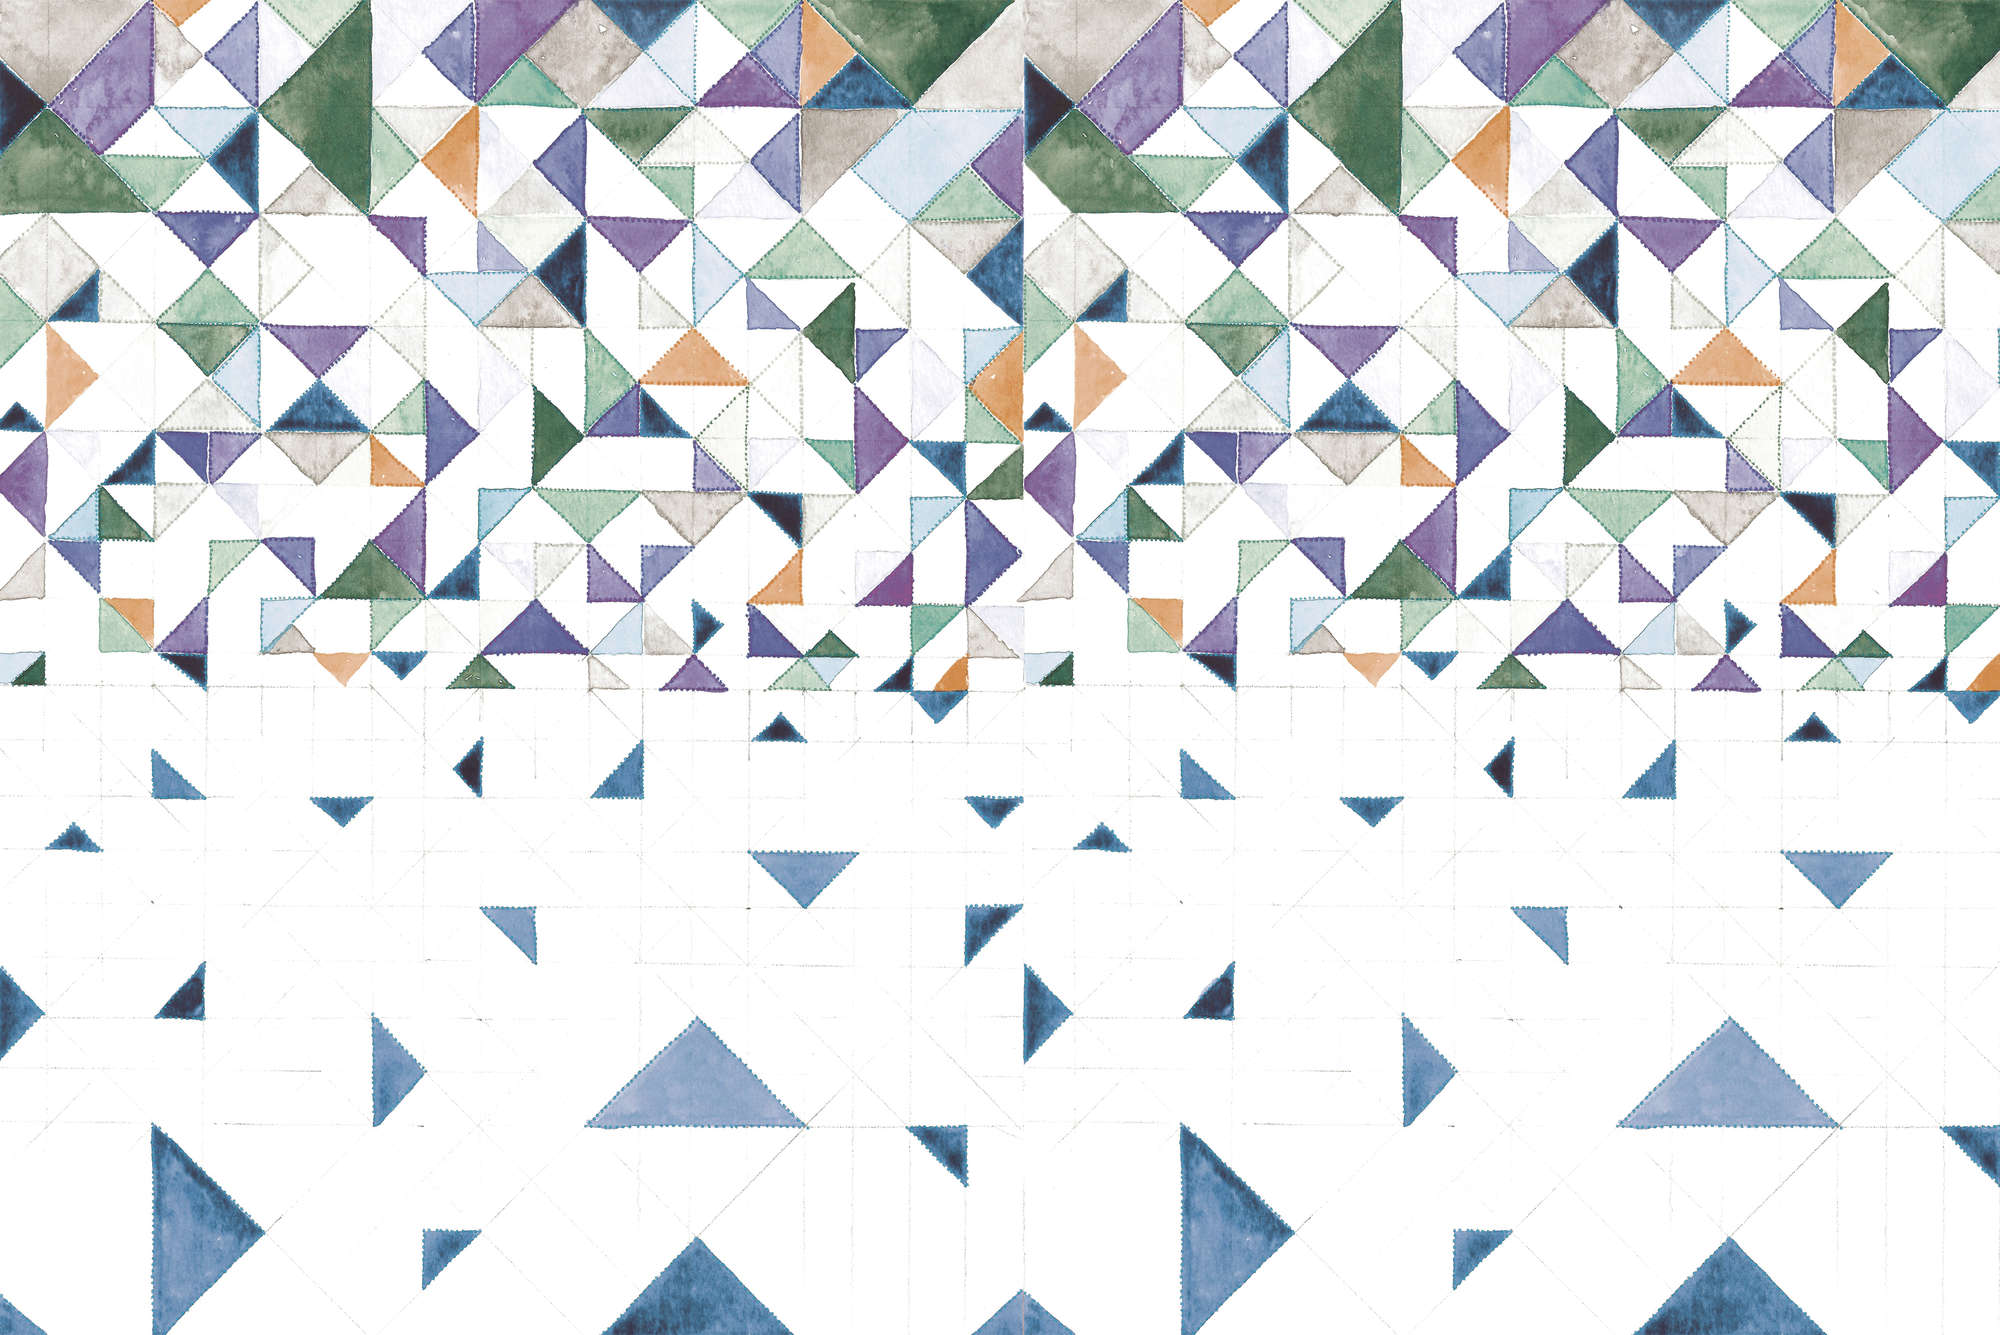             Papier peint graphique avec motif triangulaire sur intissé structuré
        